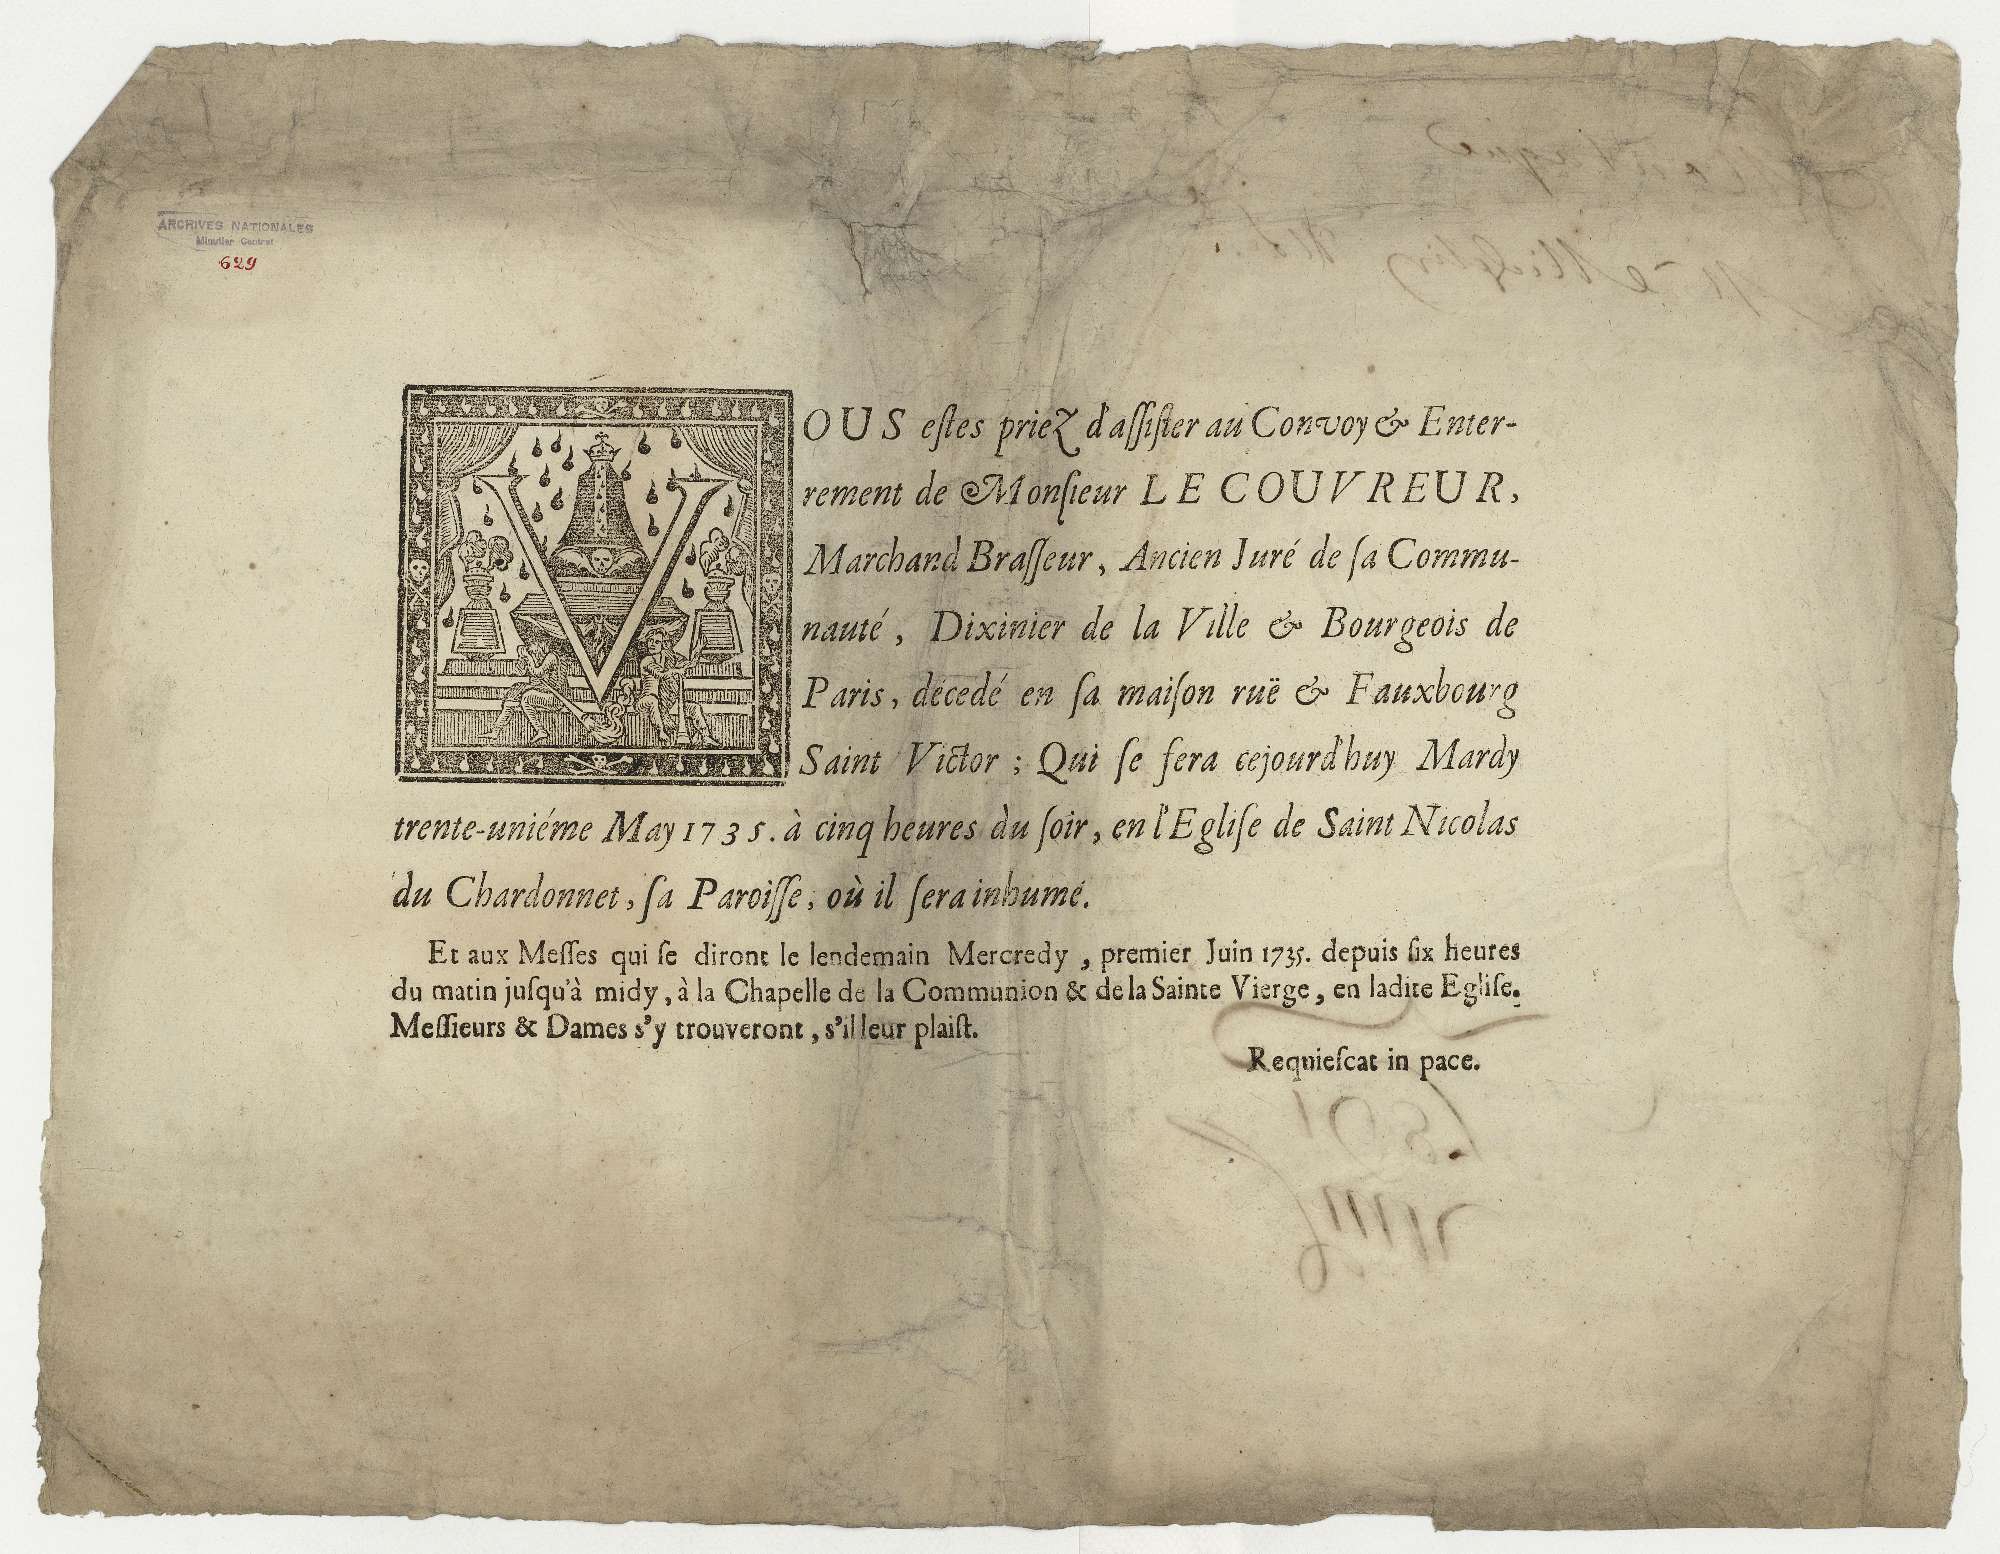 Placard de décès de Le Couvreur, marchand brassier et bourgeois de Paris : la cérémonie sera célébrée le 31 mai 1735 en l'église de Saint-Nicolas du Chardonnet, où le défunt sera inhumé